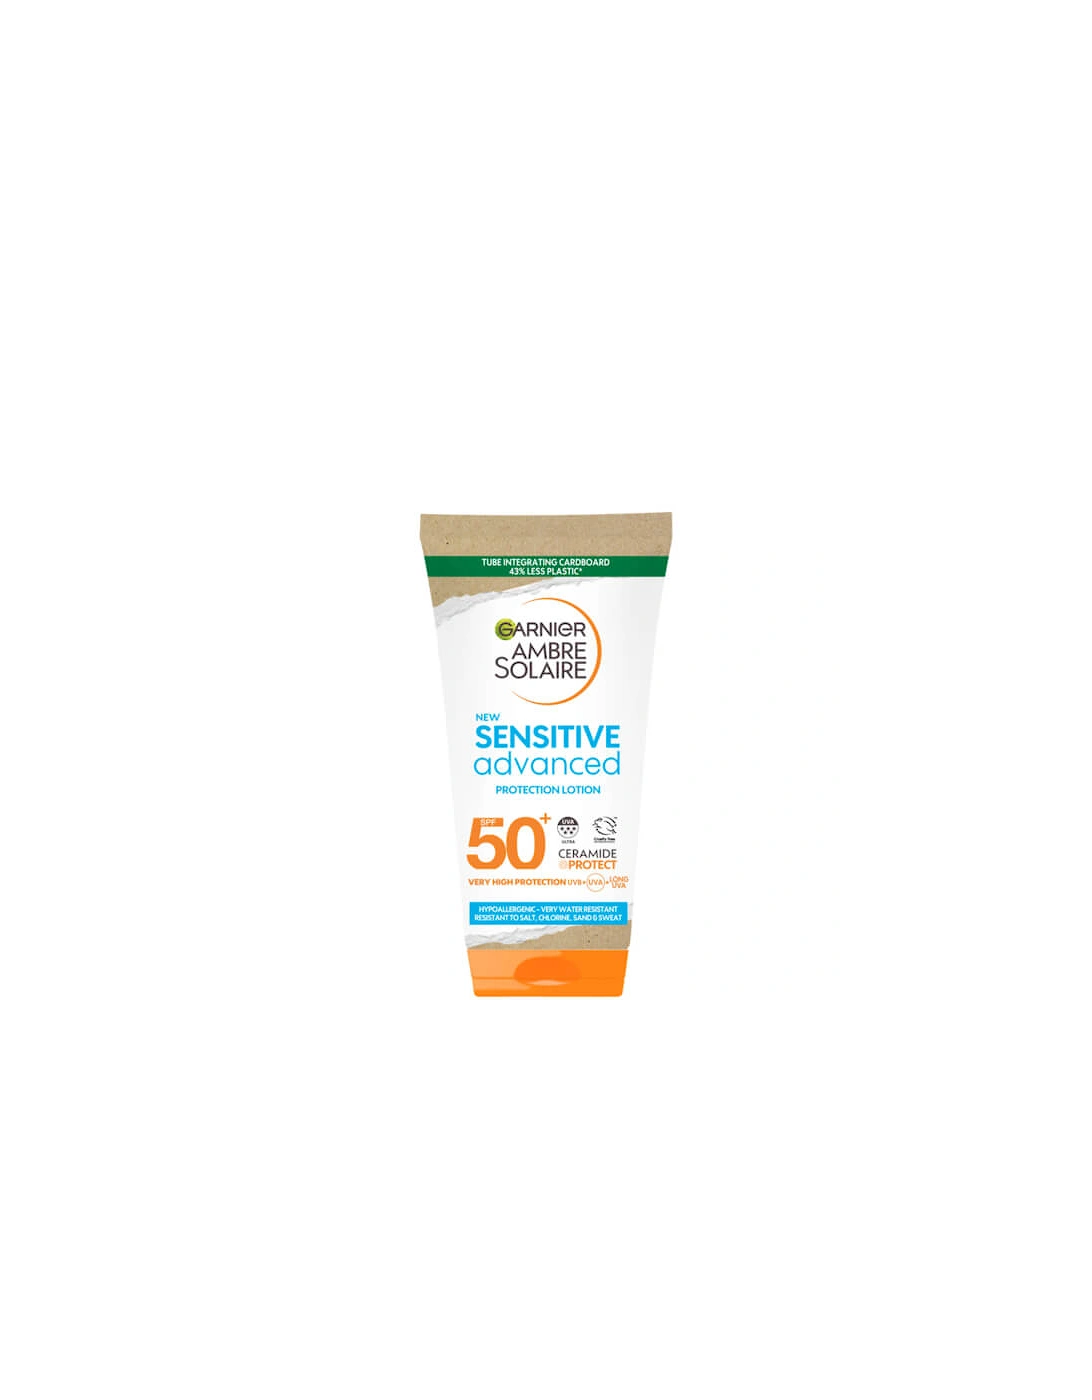 Ambre Solaire Mini Sensitive Hypoallergenic Sun Protection Cream SPF50 50ml - - Ambre Solaire Mini Sensitive Hypoallergenic Sun Protection Cream SPF50 50ml - Boris, 2 of 1